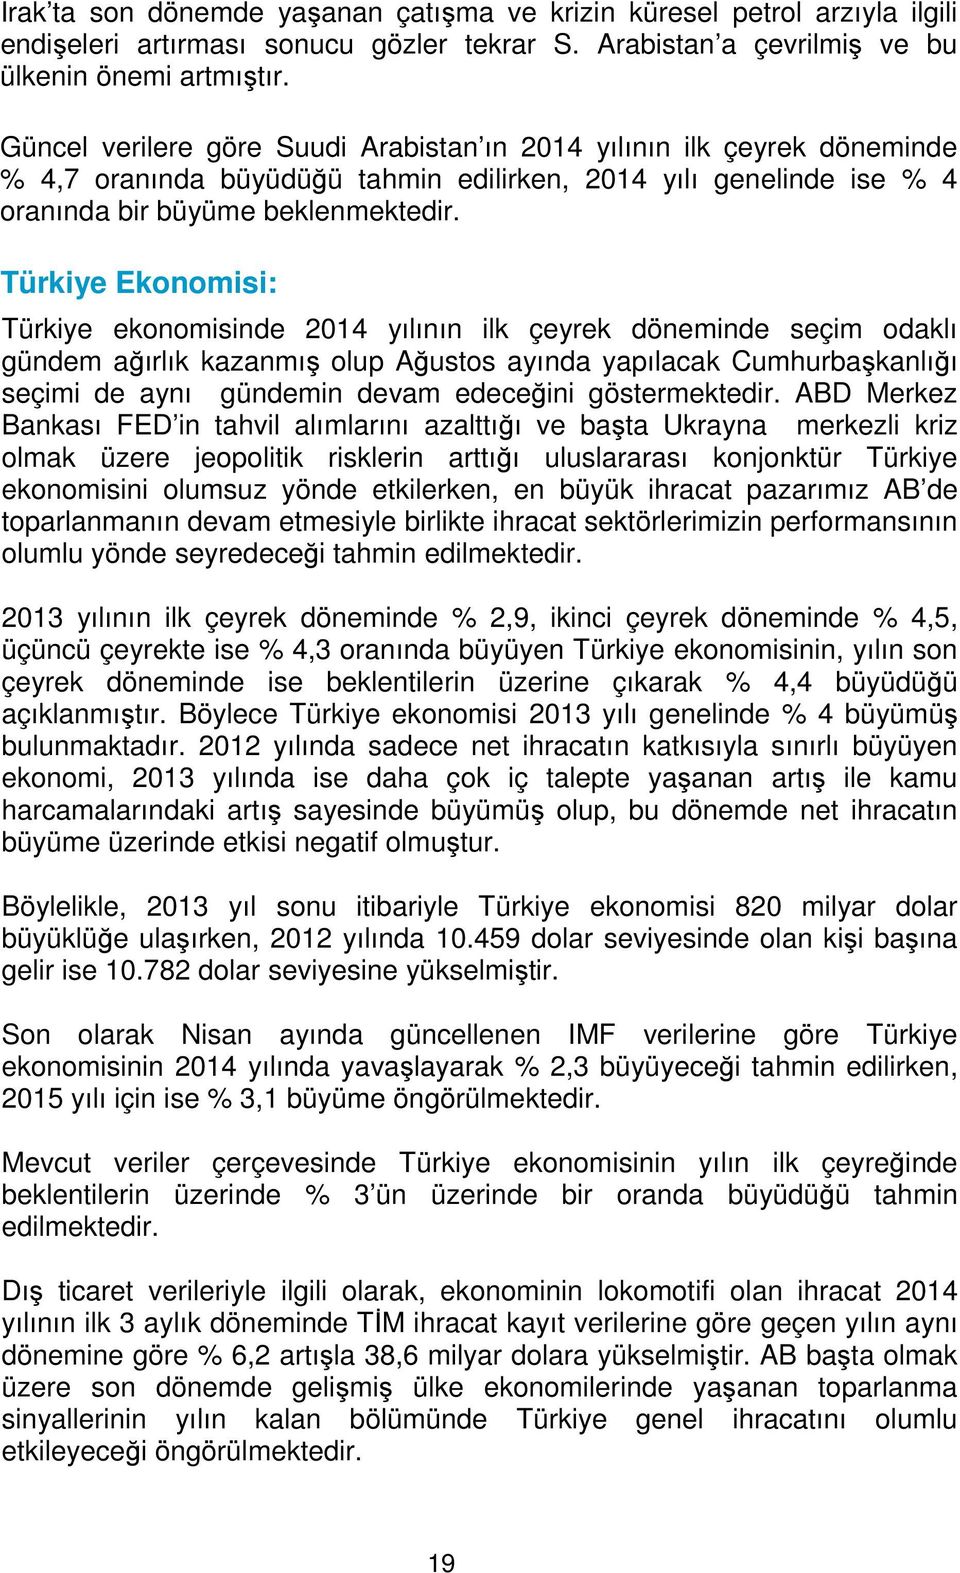 Türkiye Ekonomisi: Türkiye ekonomisinde 2014 yılının ilk çeyrek döneminde seçim odaklı gündem ağırlık kazanmış olup Ağustos ayında yapılacak Cumhurbaşkanlığı seçimi de aynı gündemin devam edeceğini